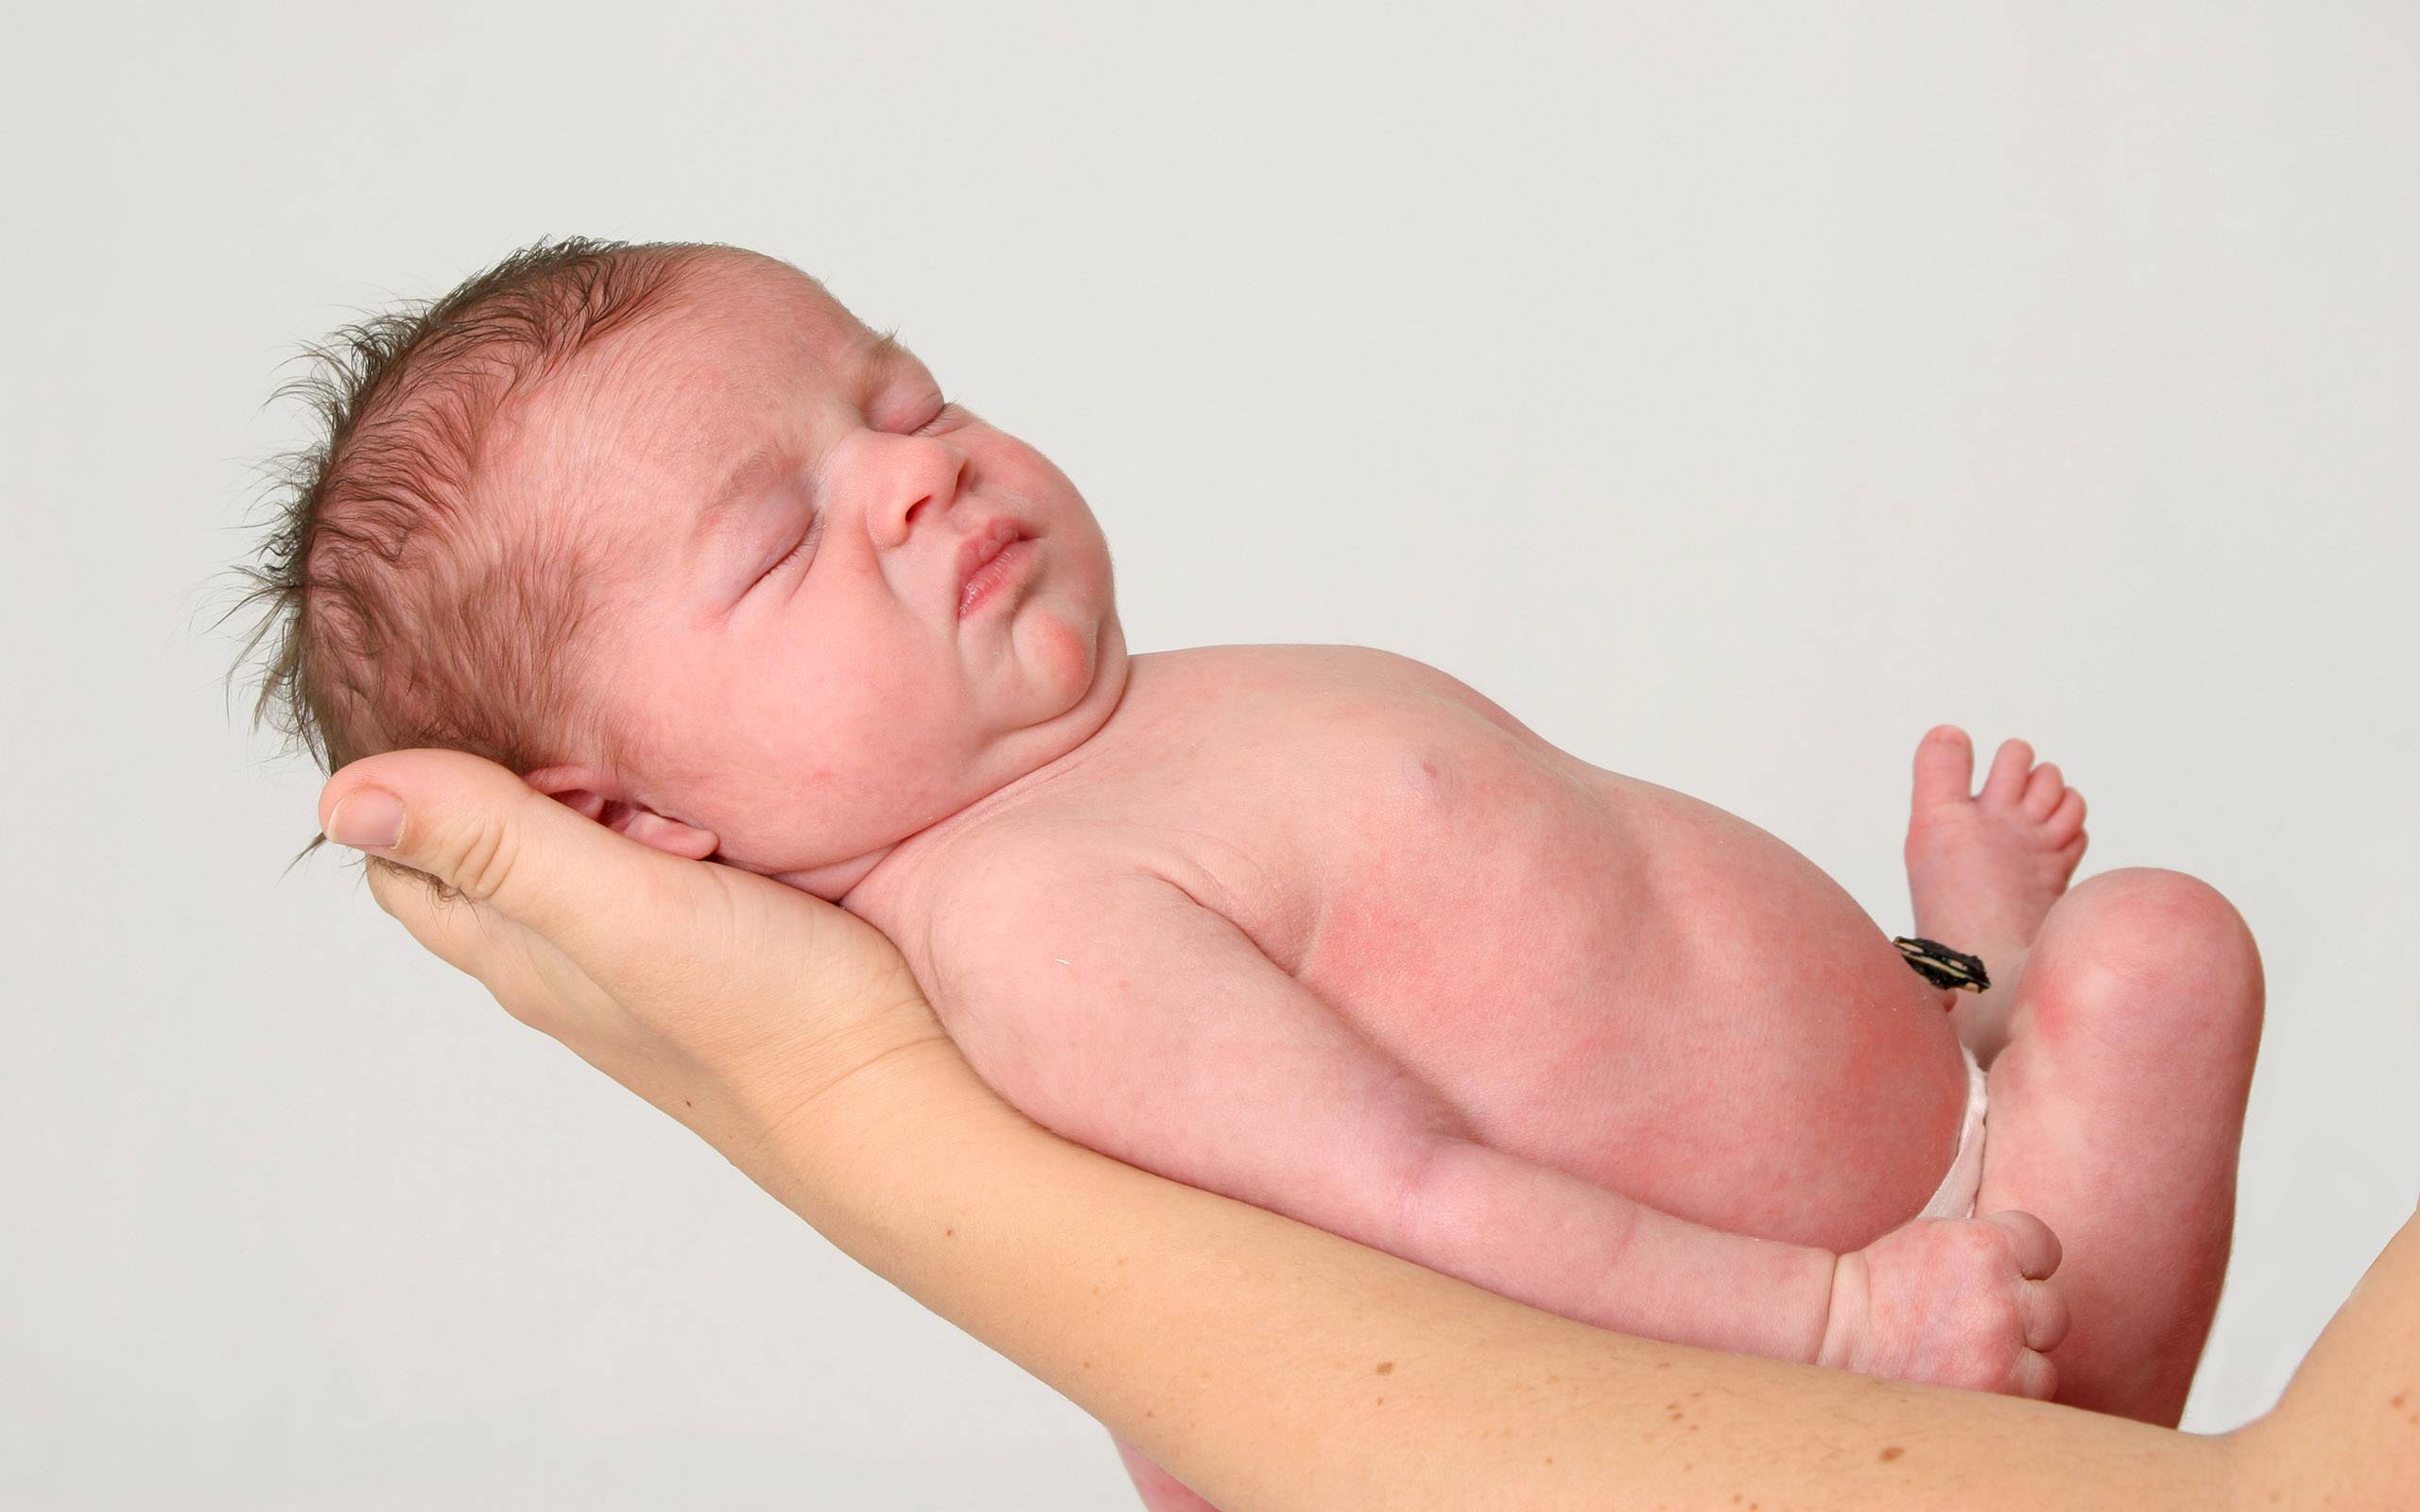 Что такое токсическая эритема у новорожденного? насколько безопасно данное состояние? что стоит предпринять родителям?